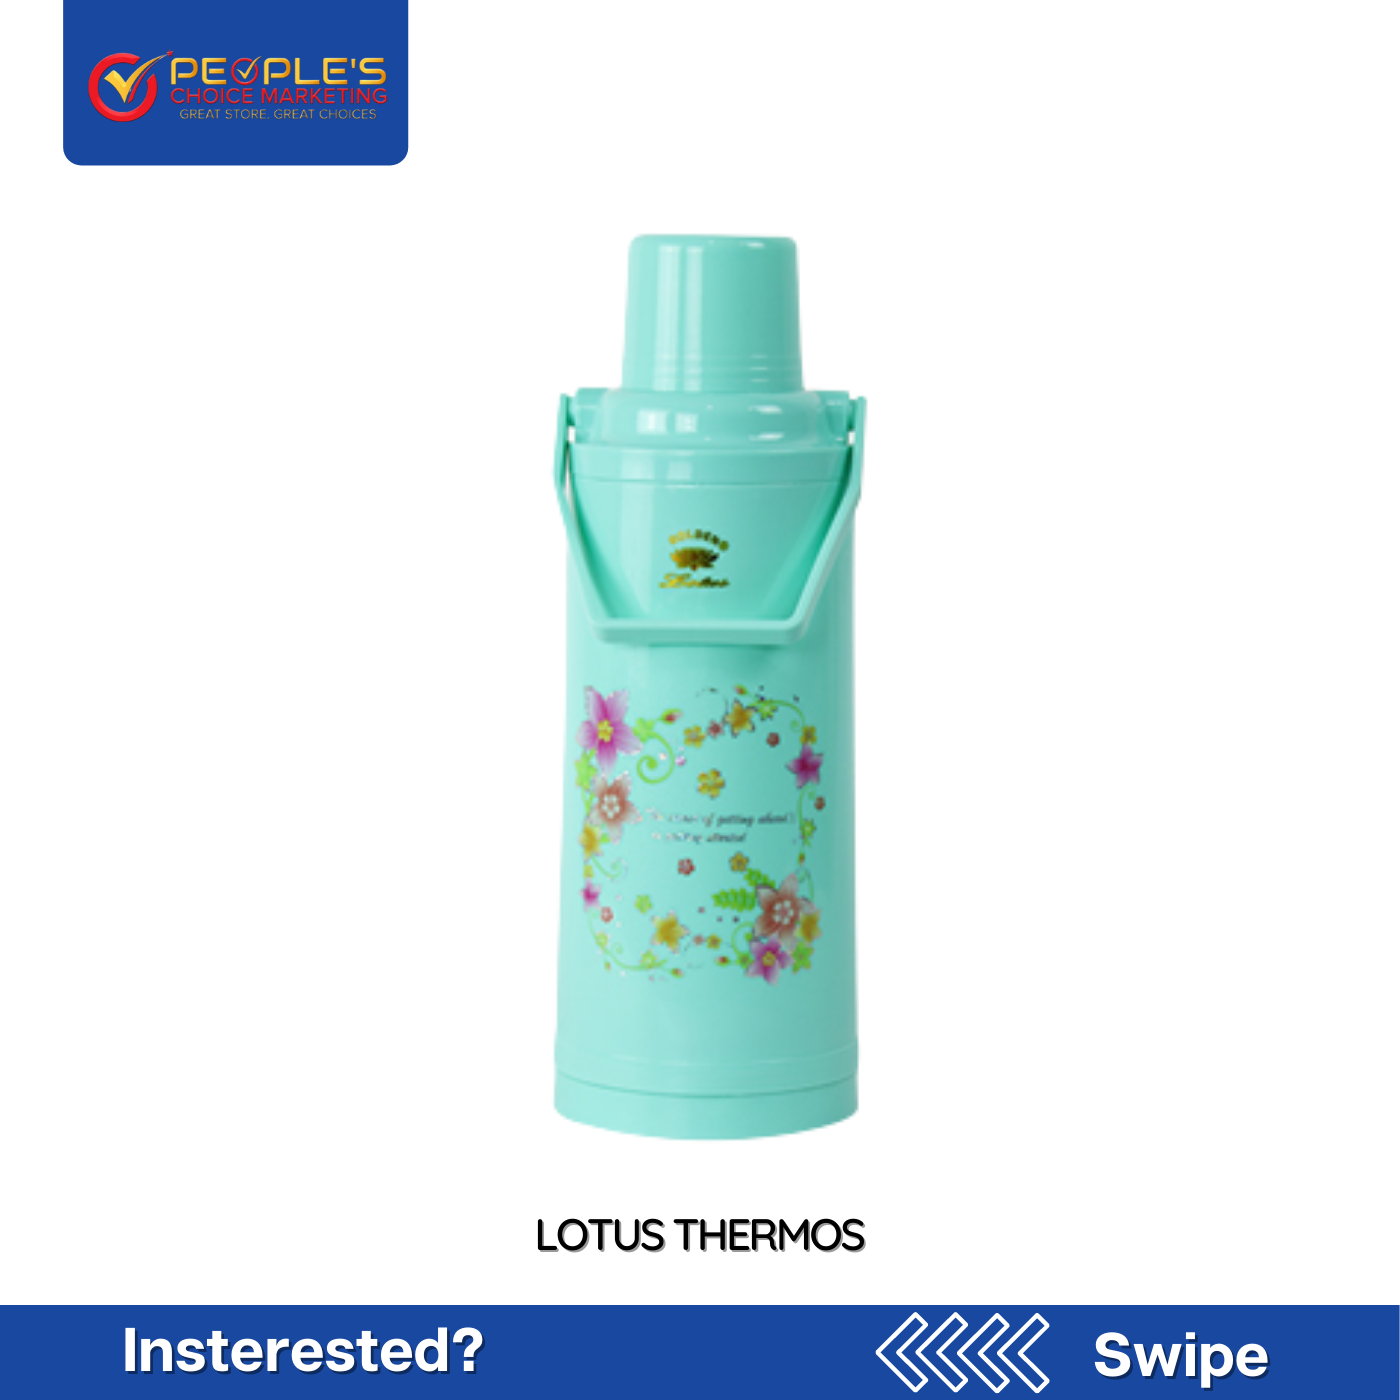 Lotus Thermos - People's Choice Marketing